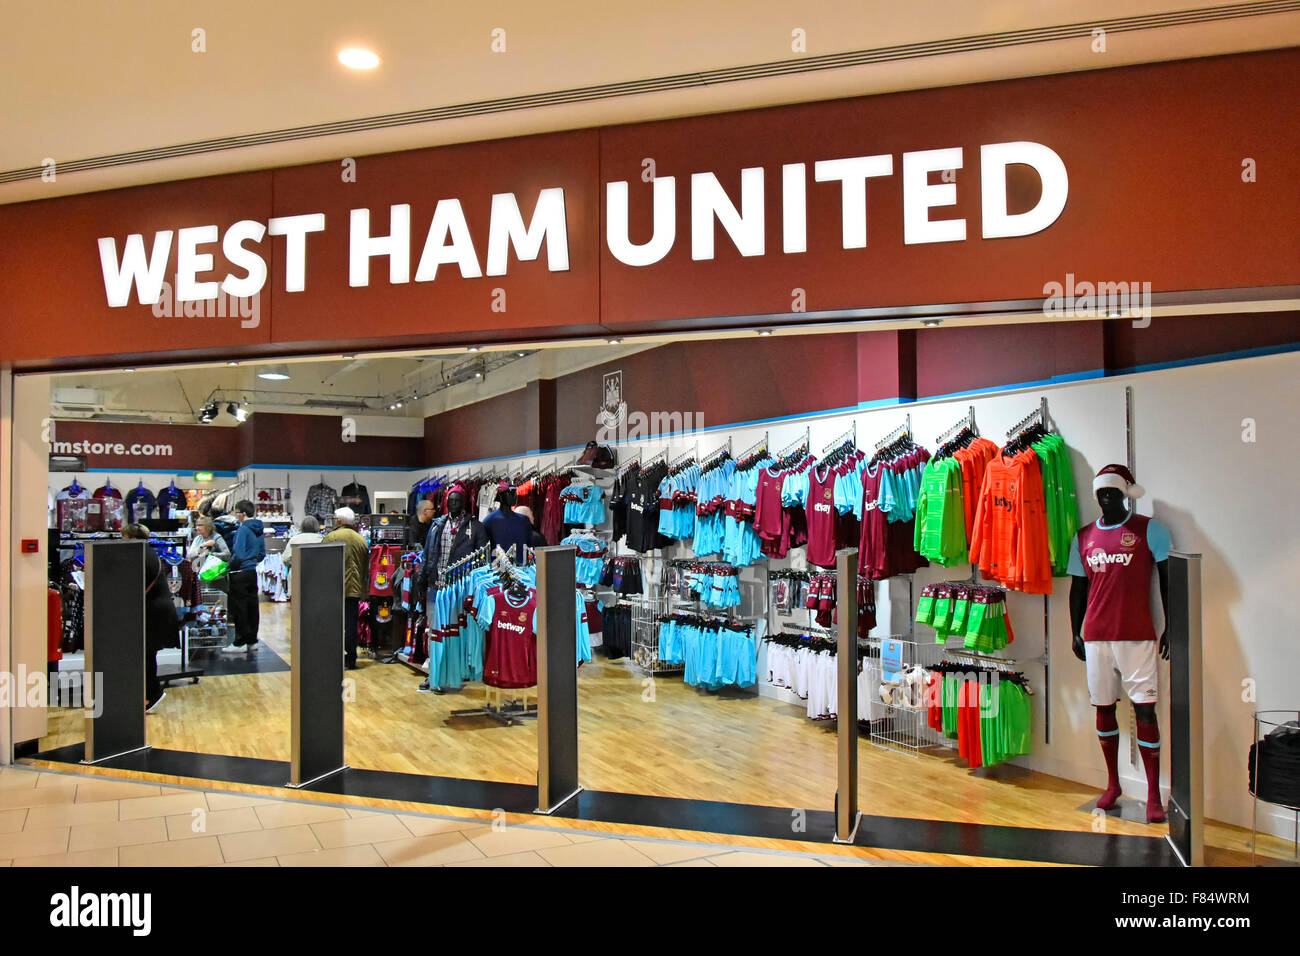 West Ham United Football club plan d'ouverture du magasin kit shop/dans l'Intu Lakeside galerie marchande couverte à West Thurrock Essex en Angleterre Banque D'Images